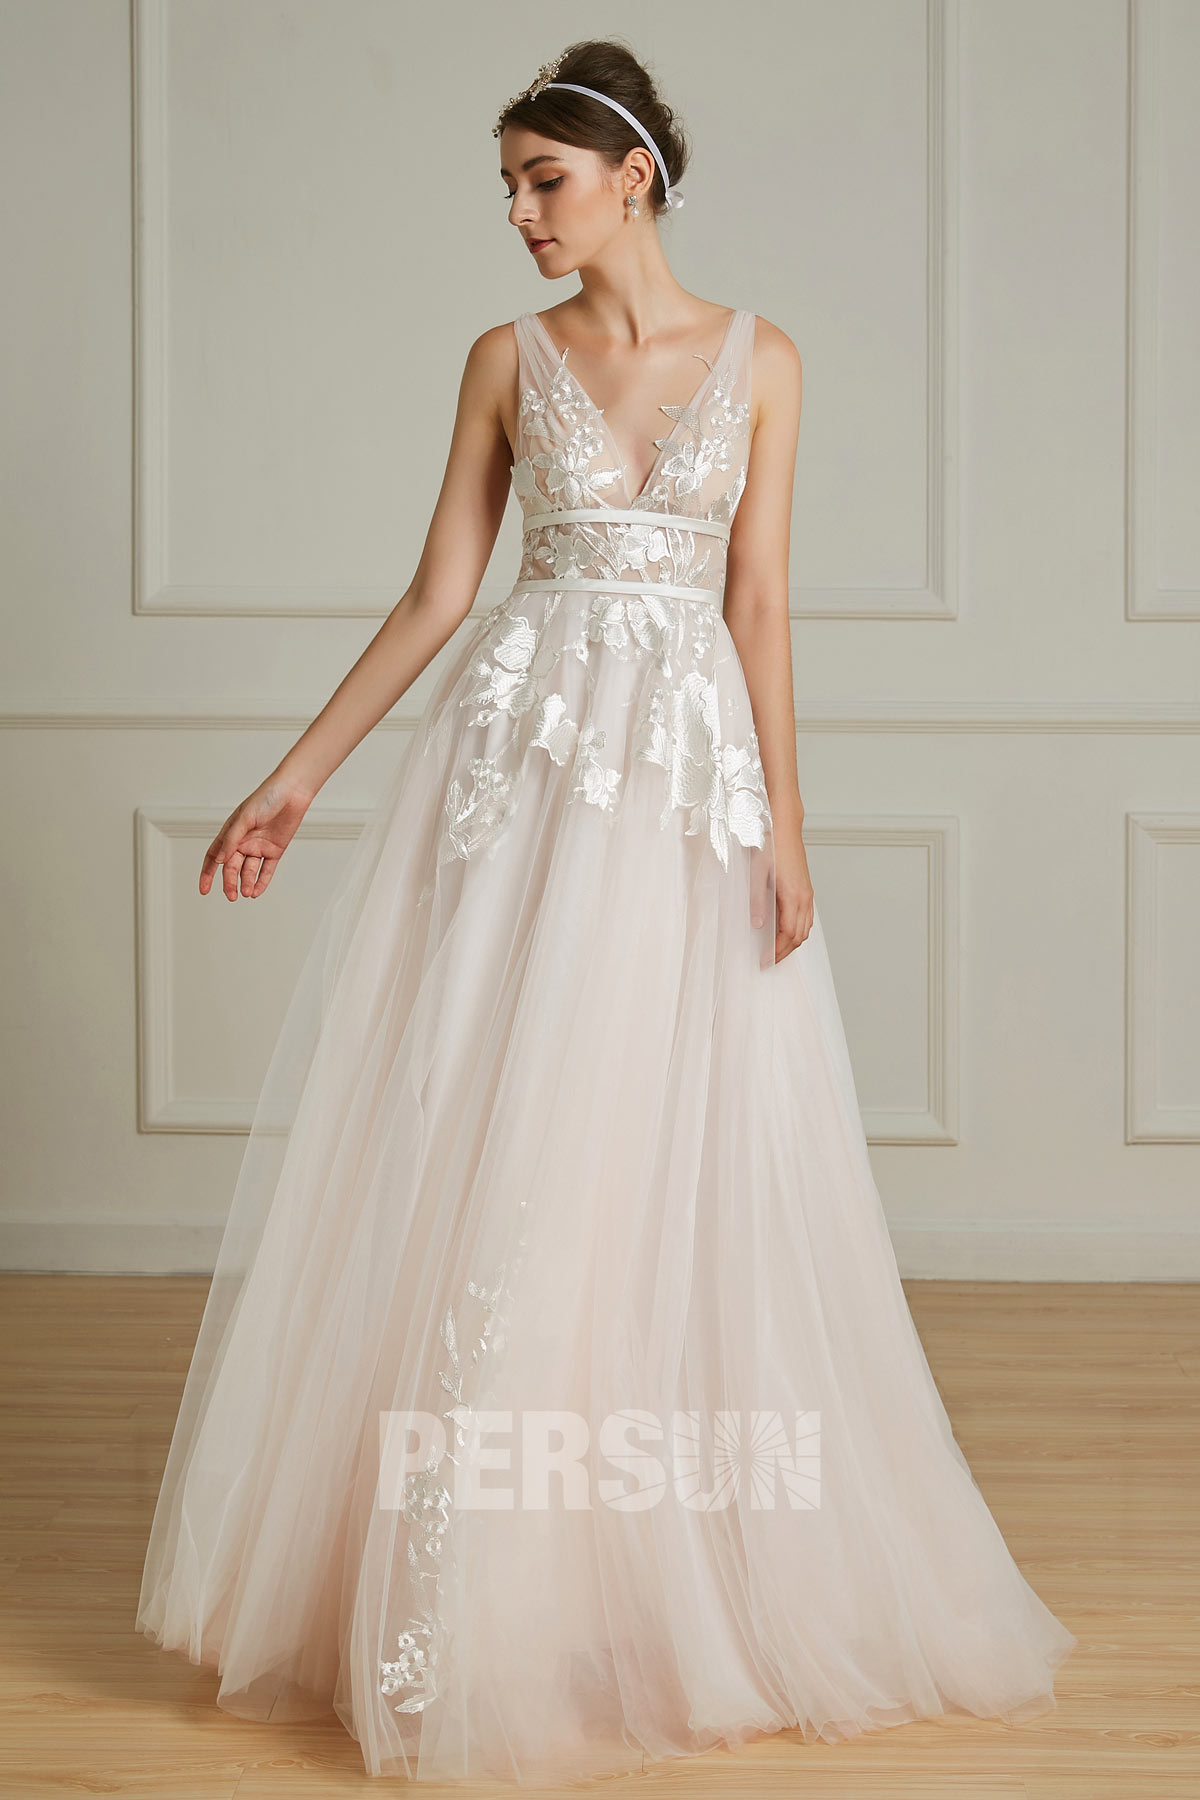 robe de mariée bohème 2019 rose pâle col en V appliqué de dentelle